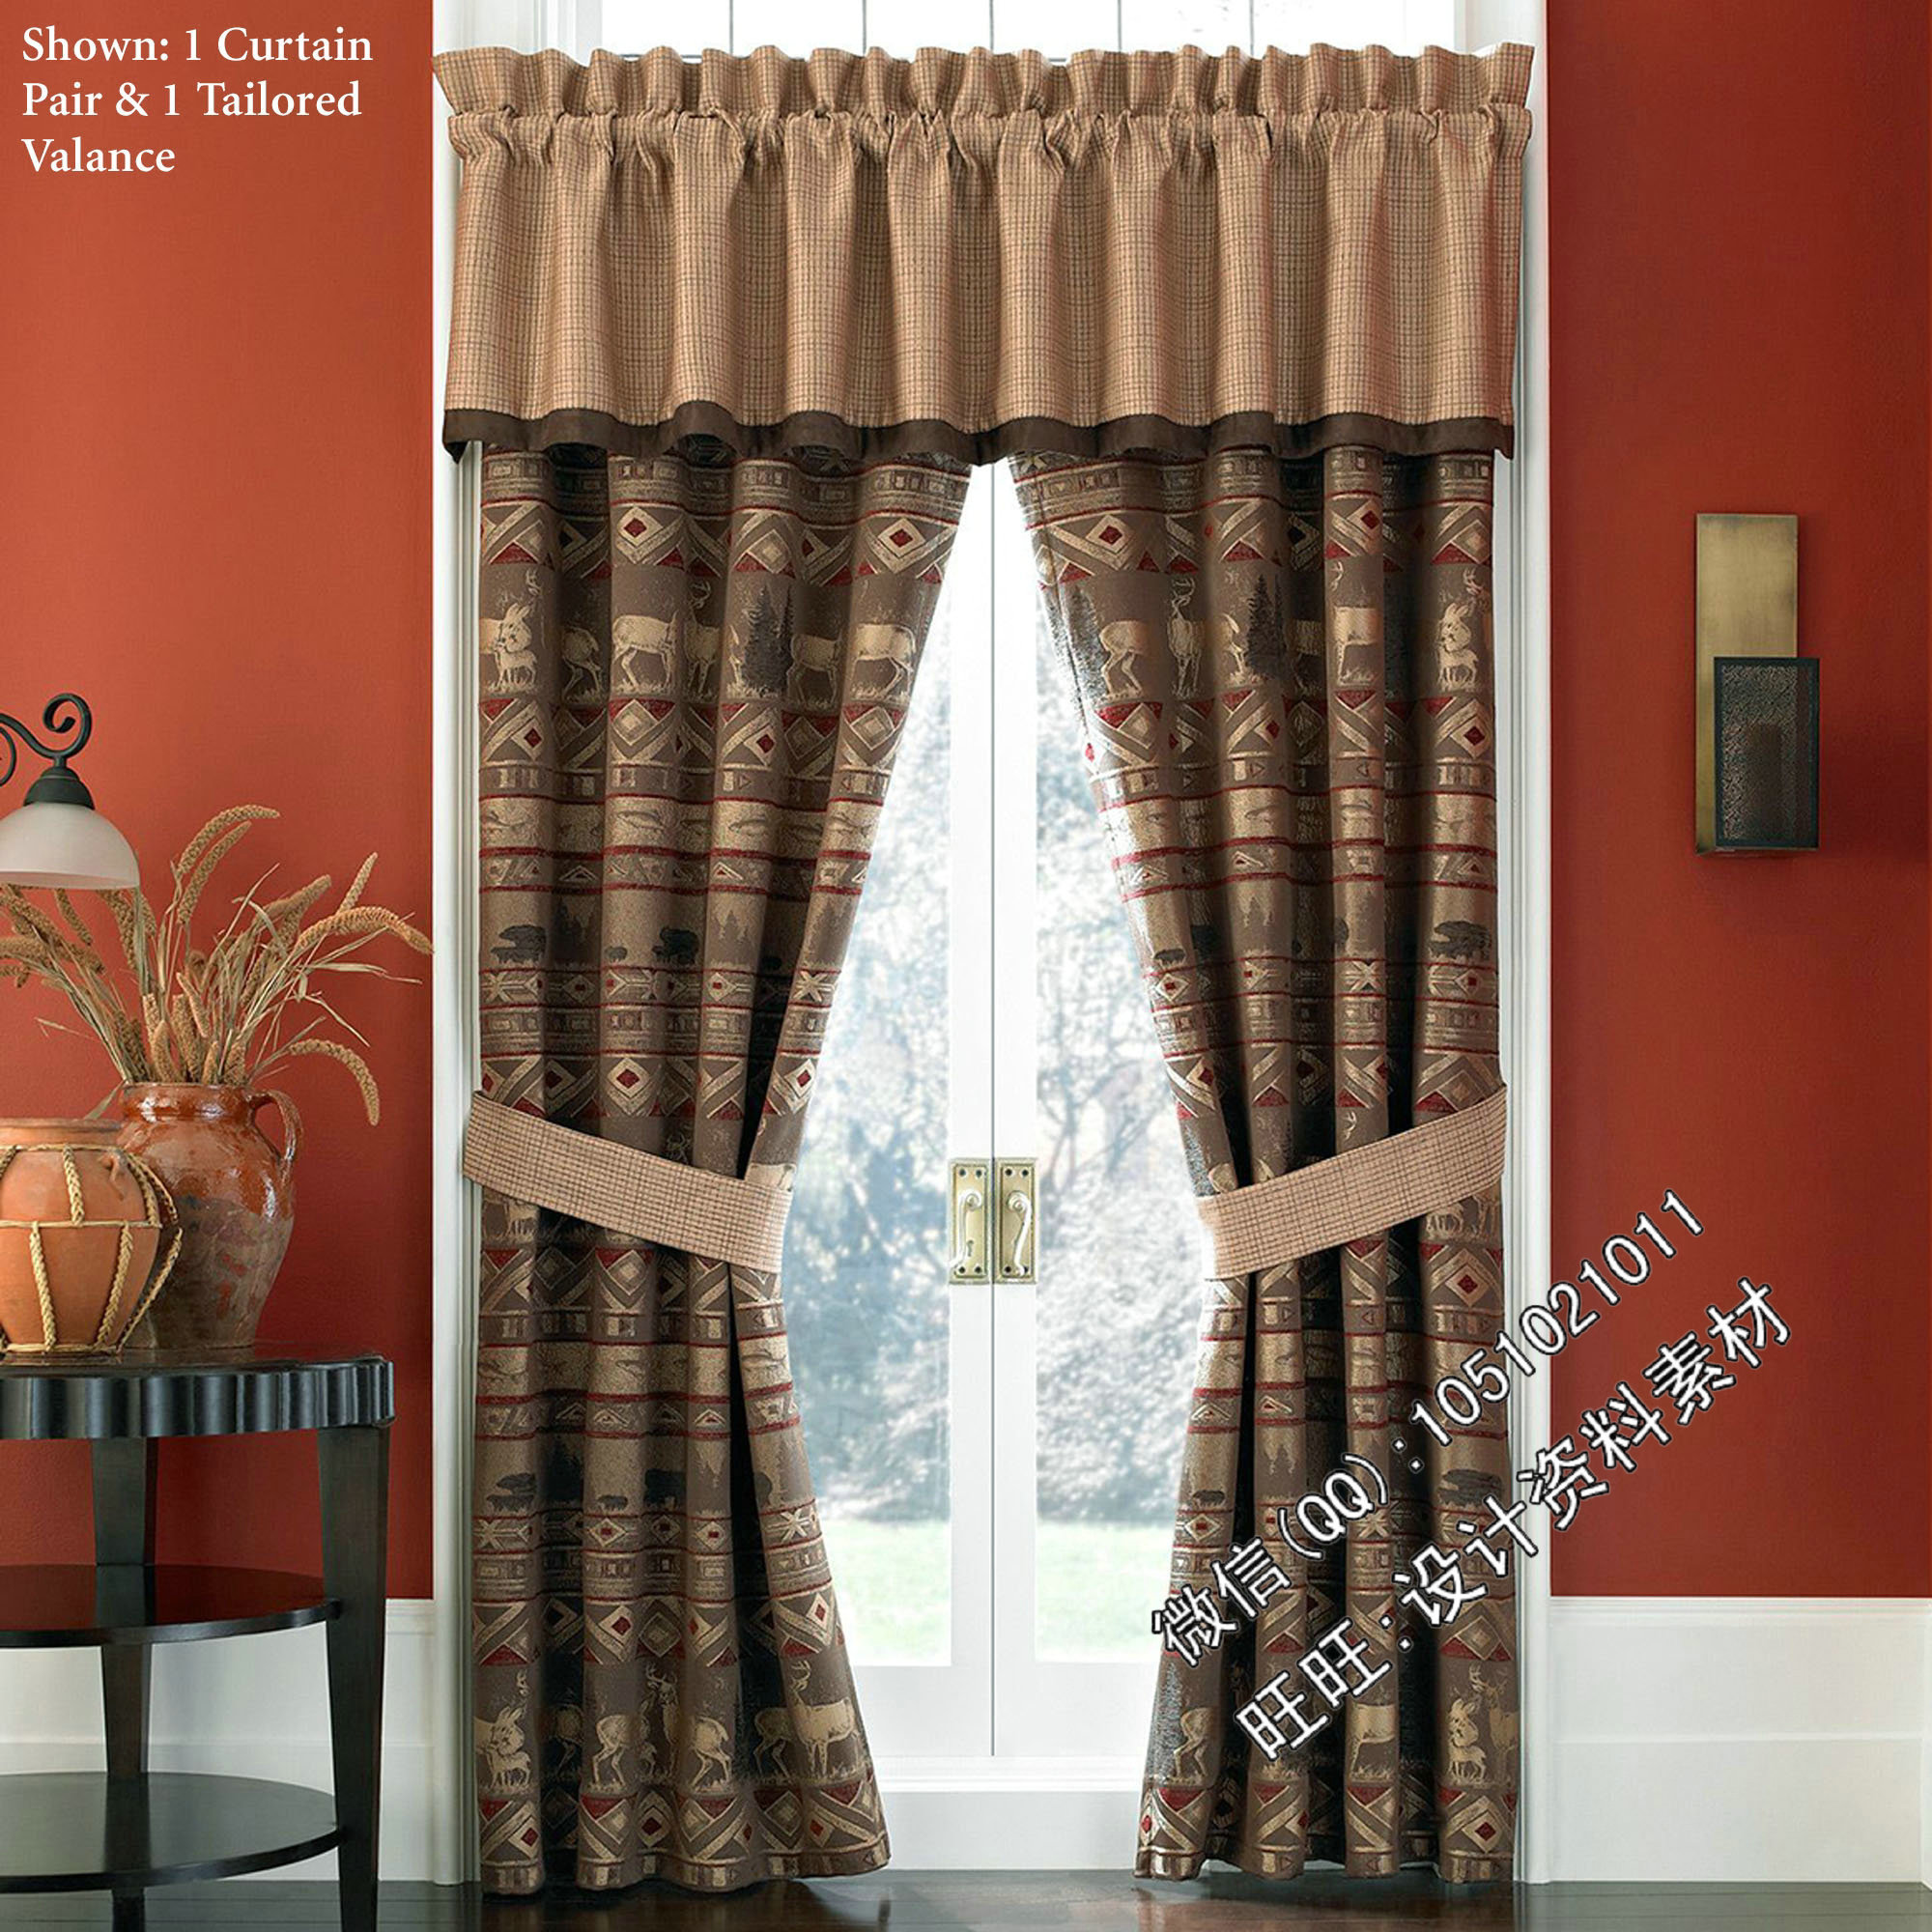 rc5窗帘窗饰布艺软装最新款式奢华国外欧式美式法式田园新古典